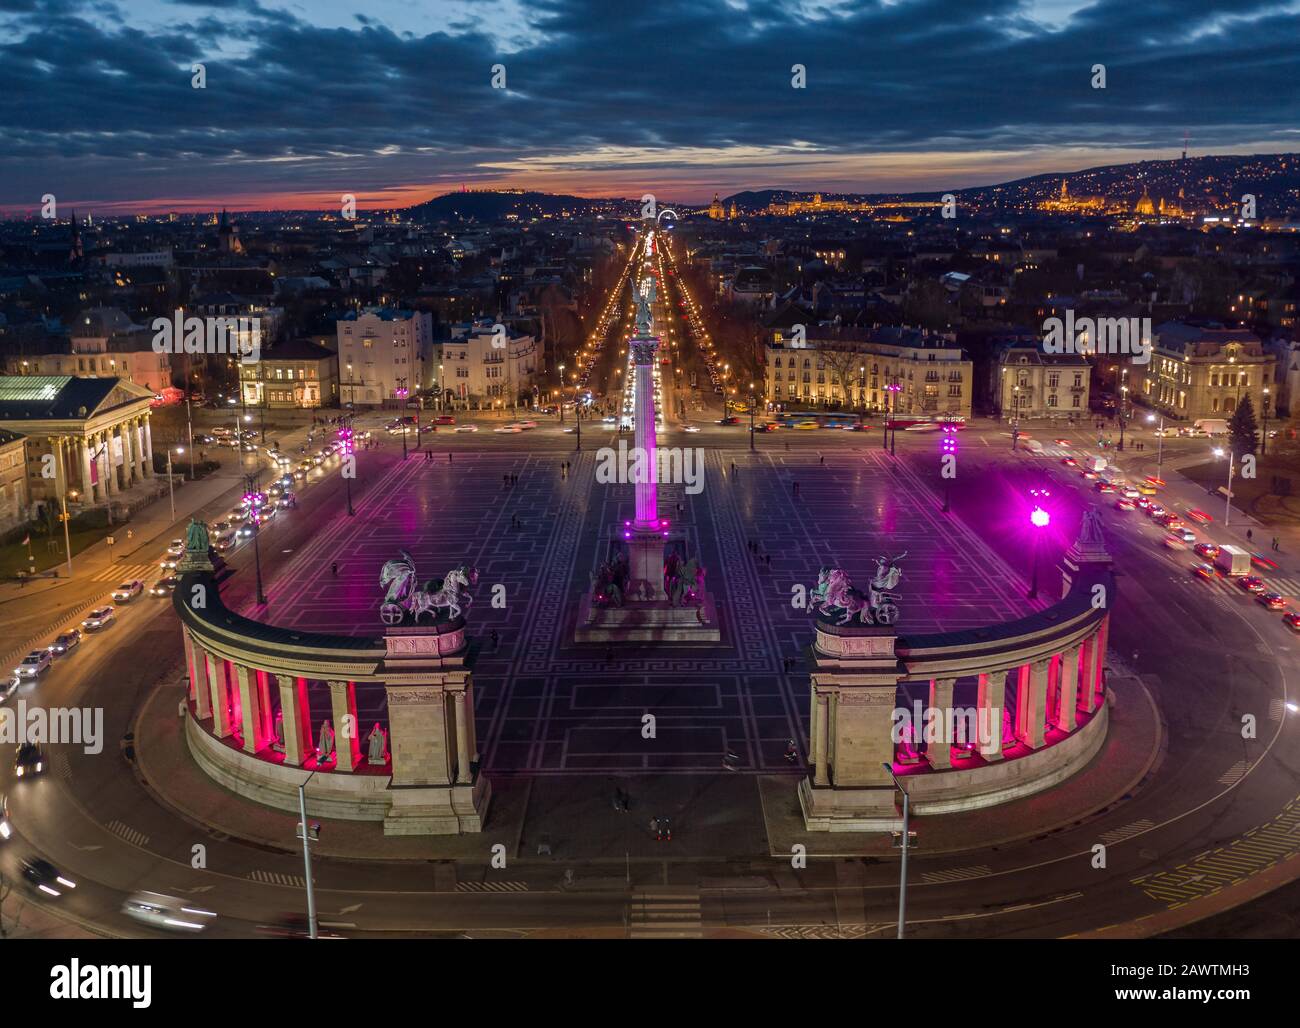 Budapest, Hungría - Vista aérea de la famosa Plaza de los Héroes (Hosok tere) iluminada en un color púrpura y rosa único por la noche con una colorida puesta de sol Foto de stock